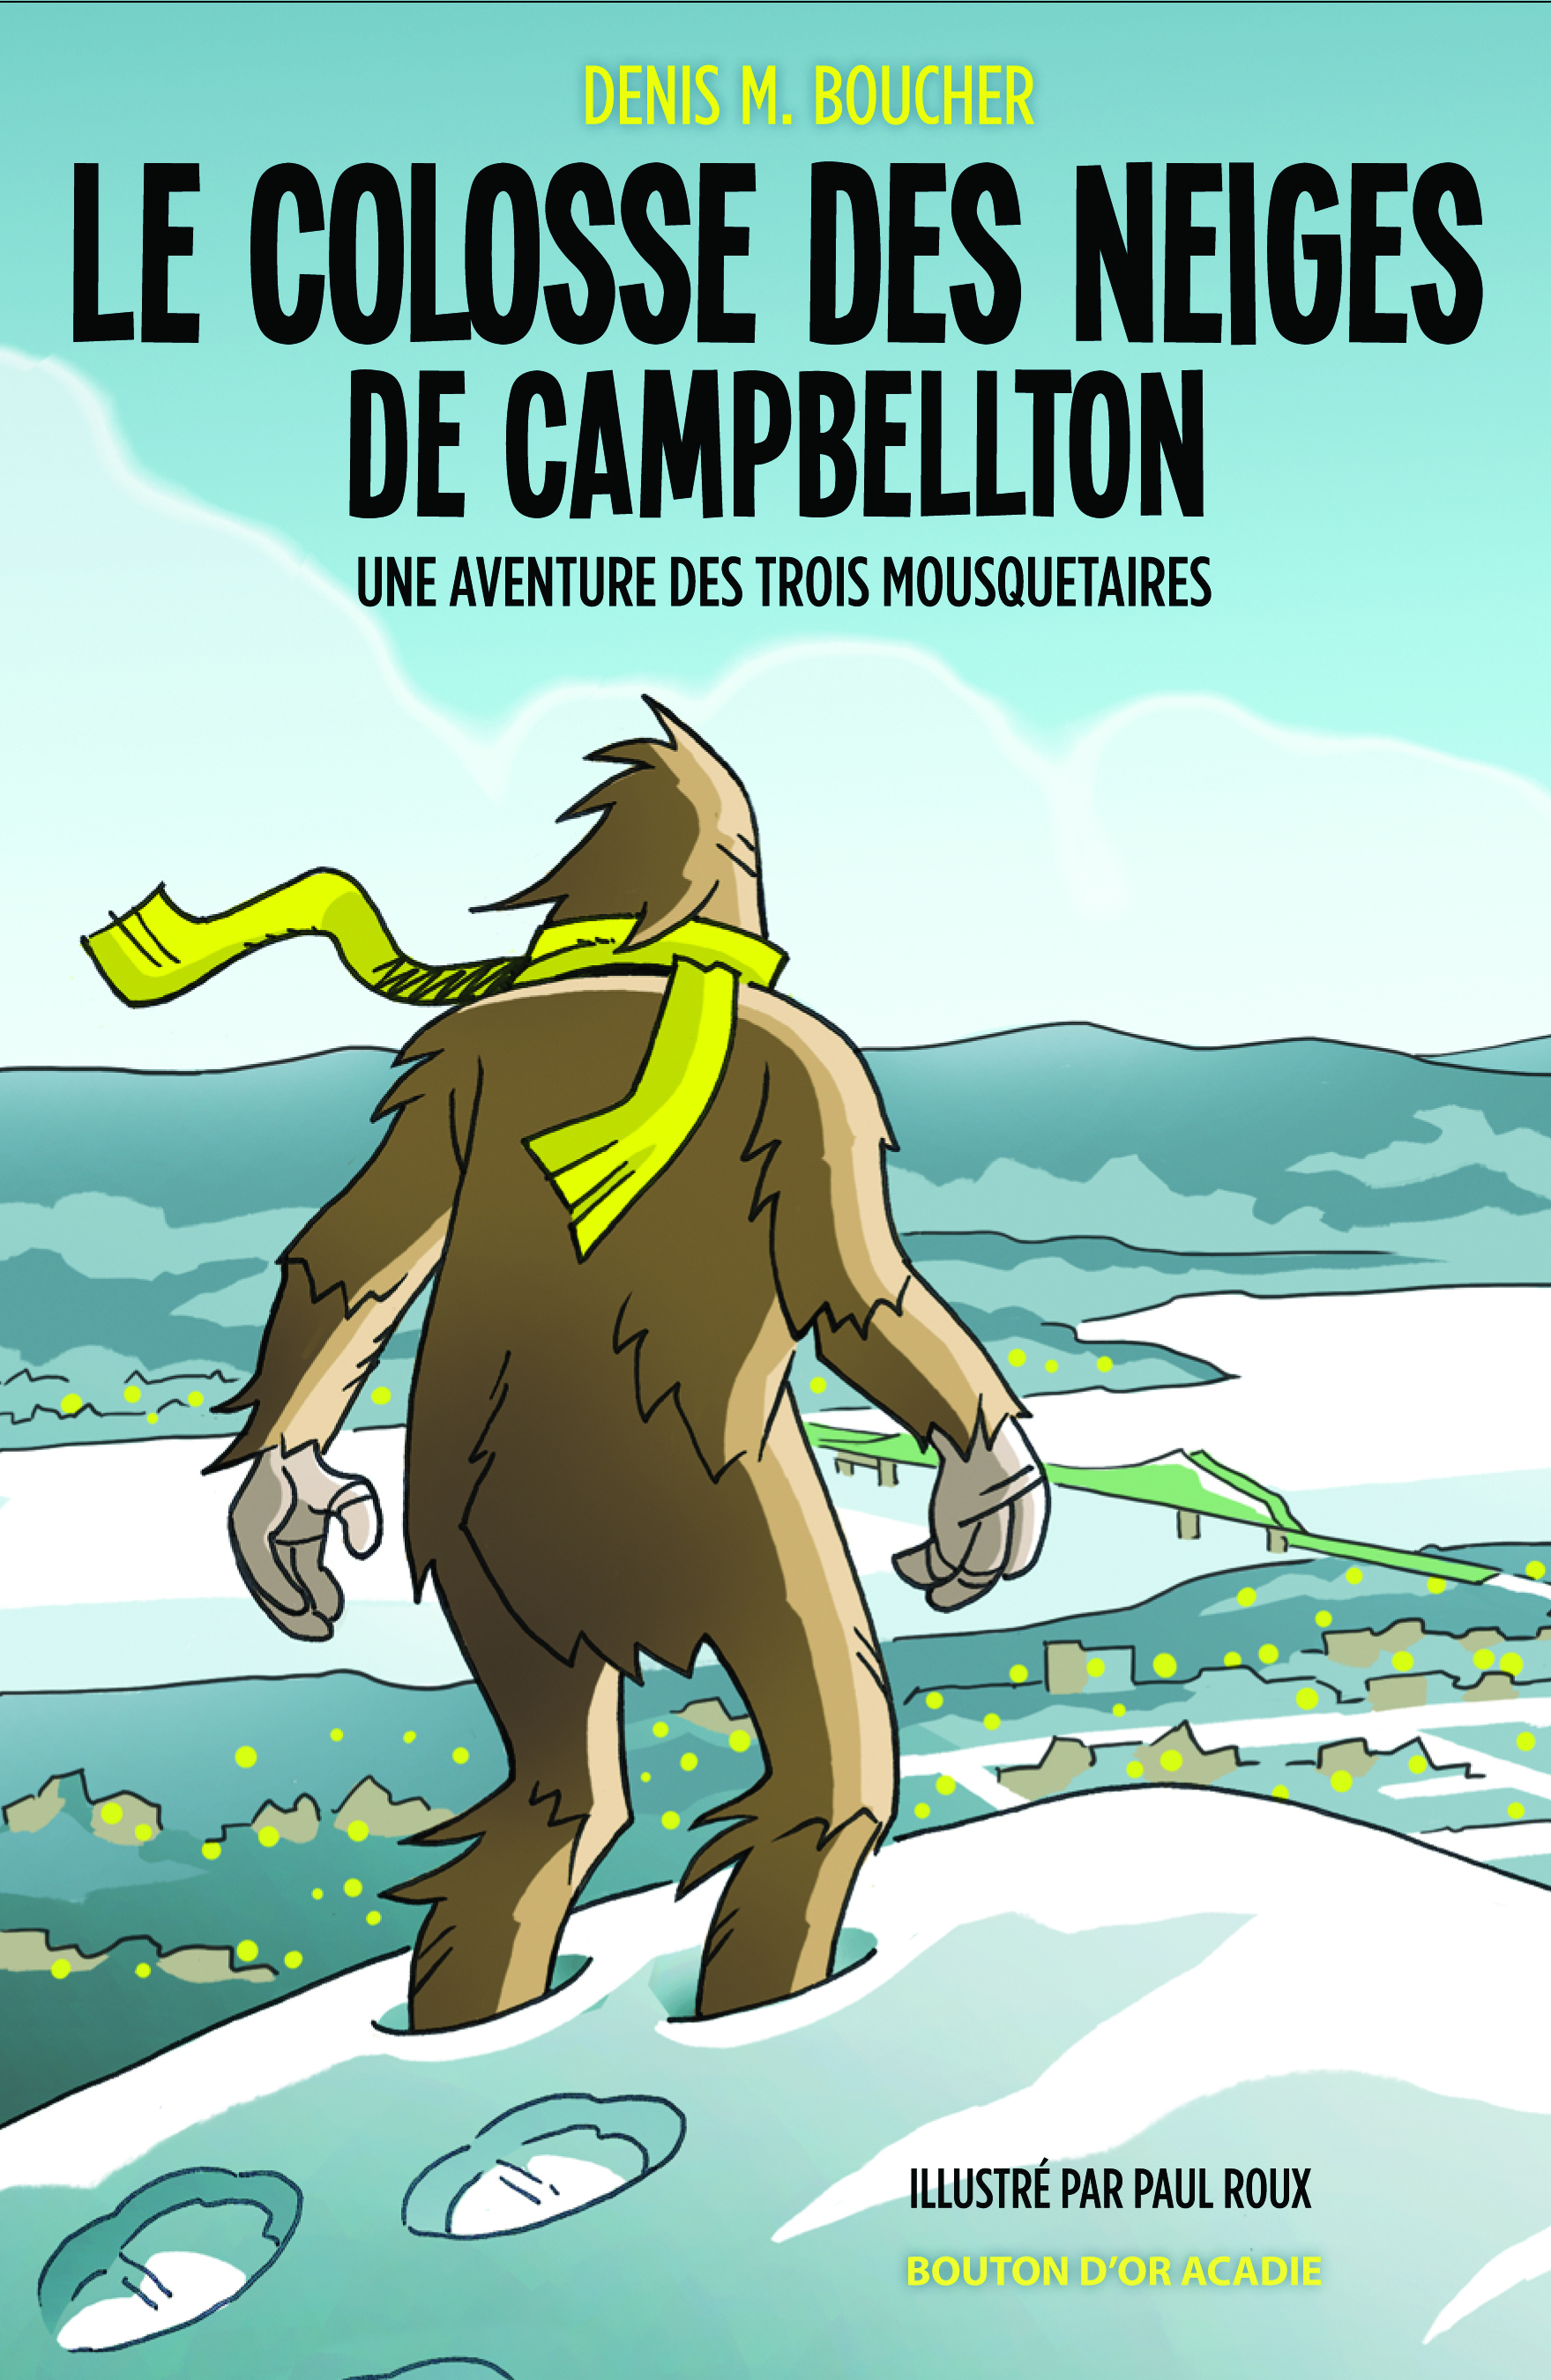 Couverture du livre Le colosse des neiges de Campbellton par Denis M. Boucher.